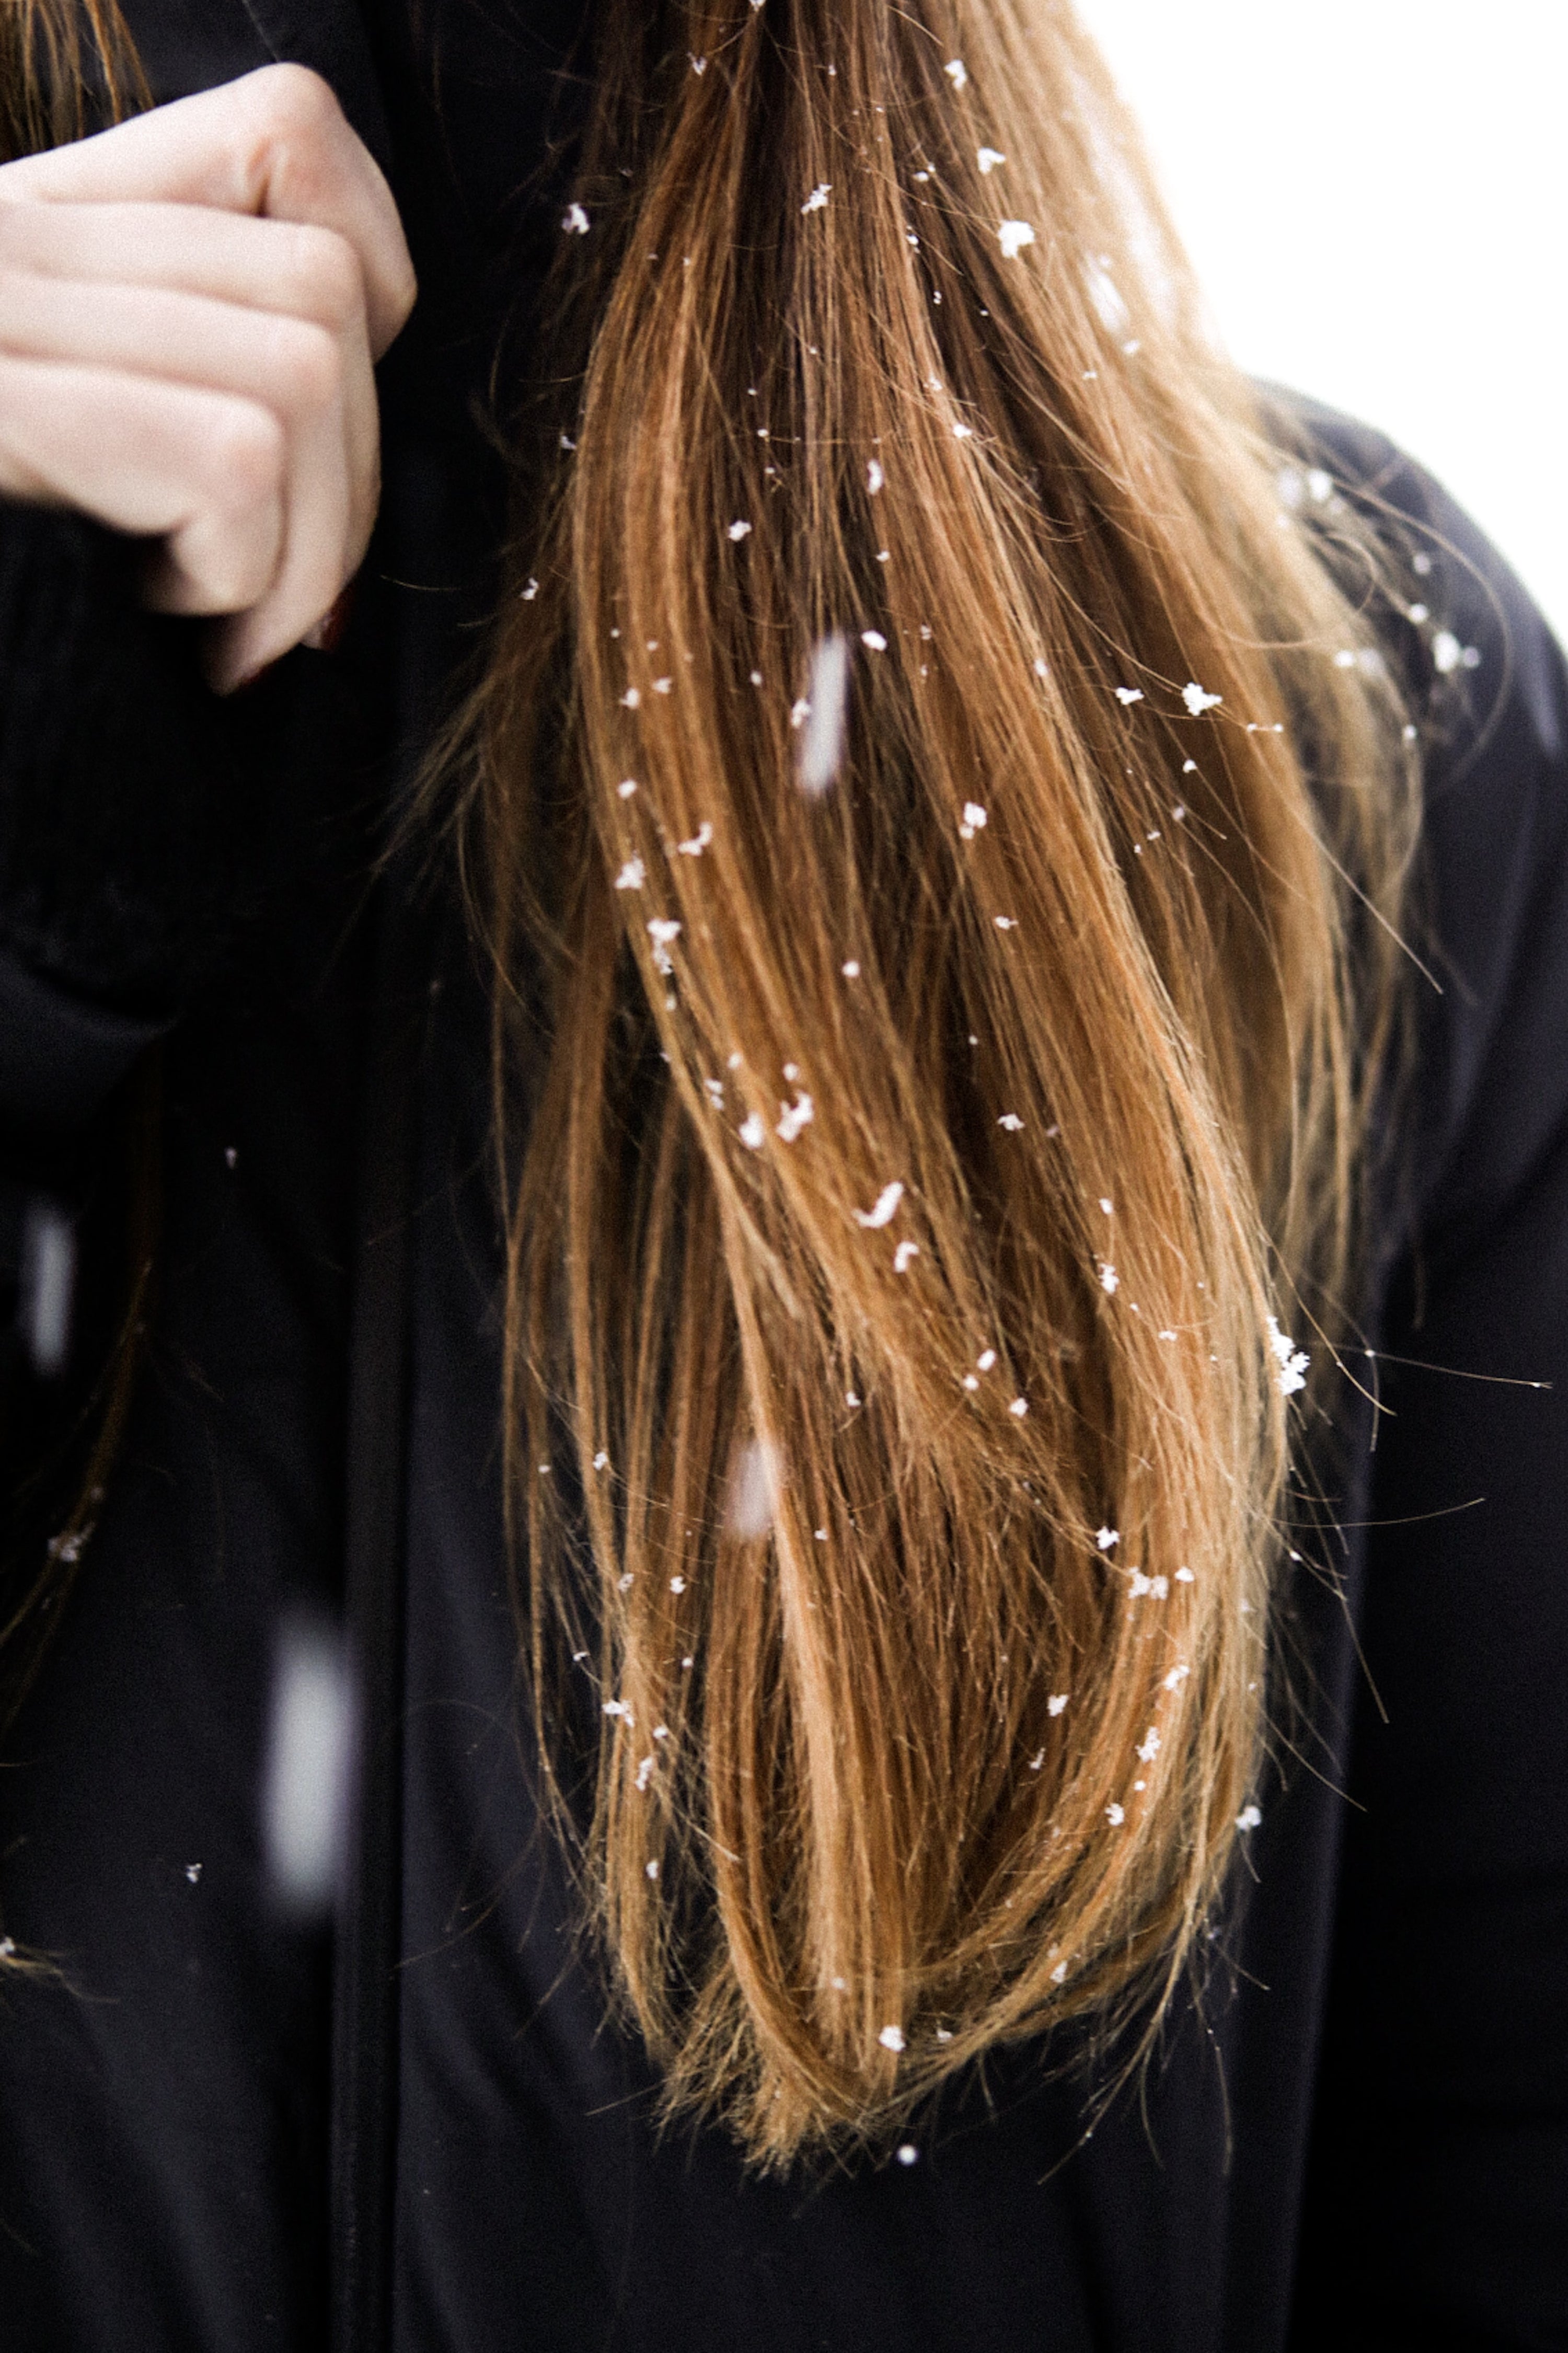 Perte de cheveux à cause du froid de l'hiver. La neige dans les cheveux, symbolique de l'agression potentielle de notre cuir chevelu en saison froide. 